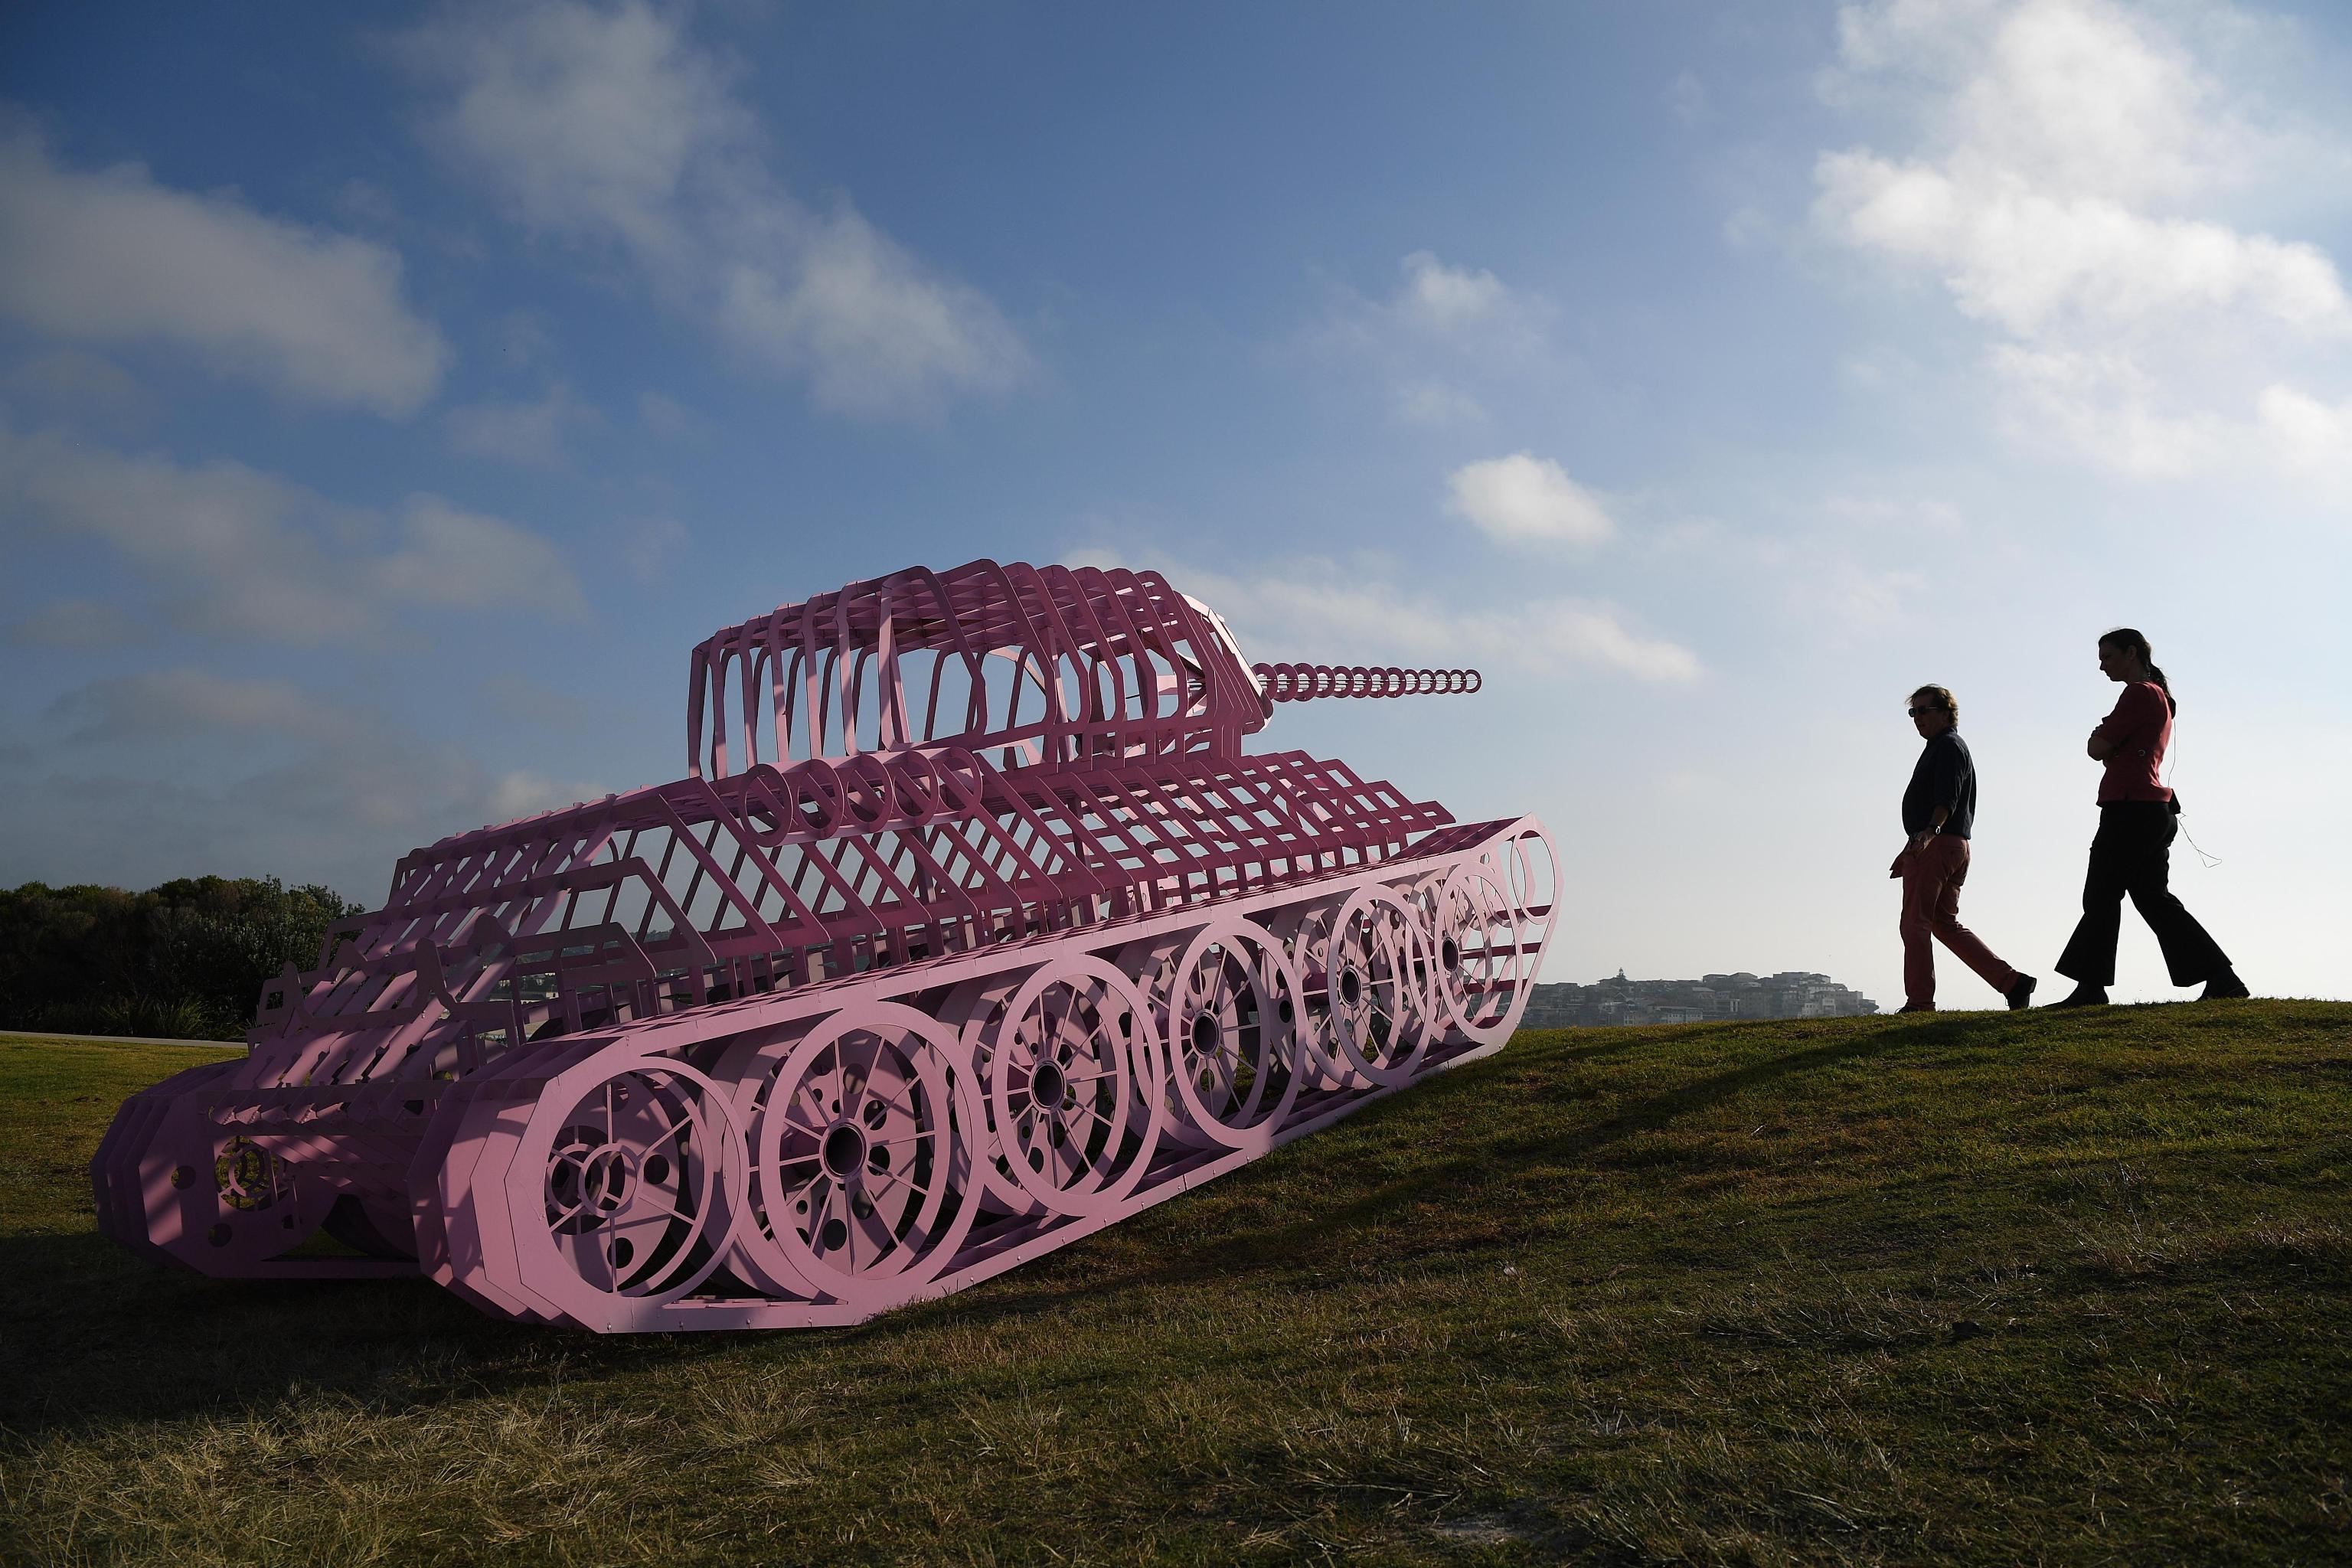 Persone camminano vicino alla scultura "Pink Tank Wrecked dell'artista ceco David Cerny